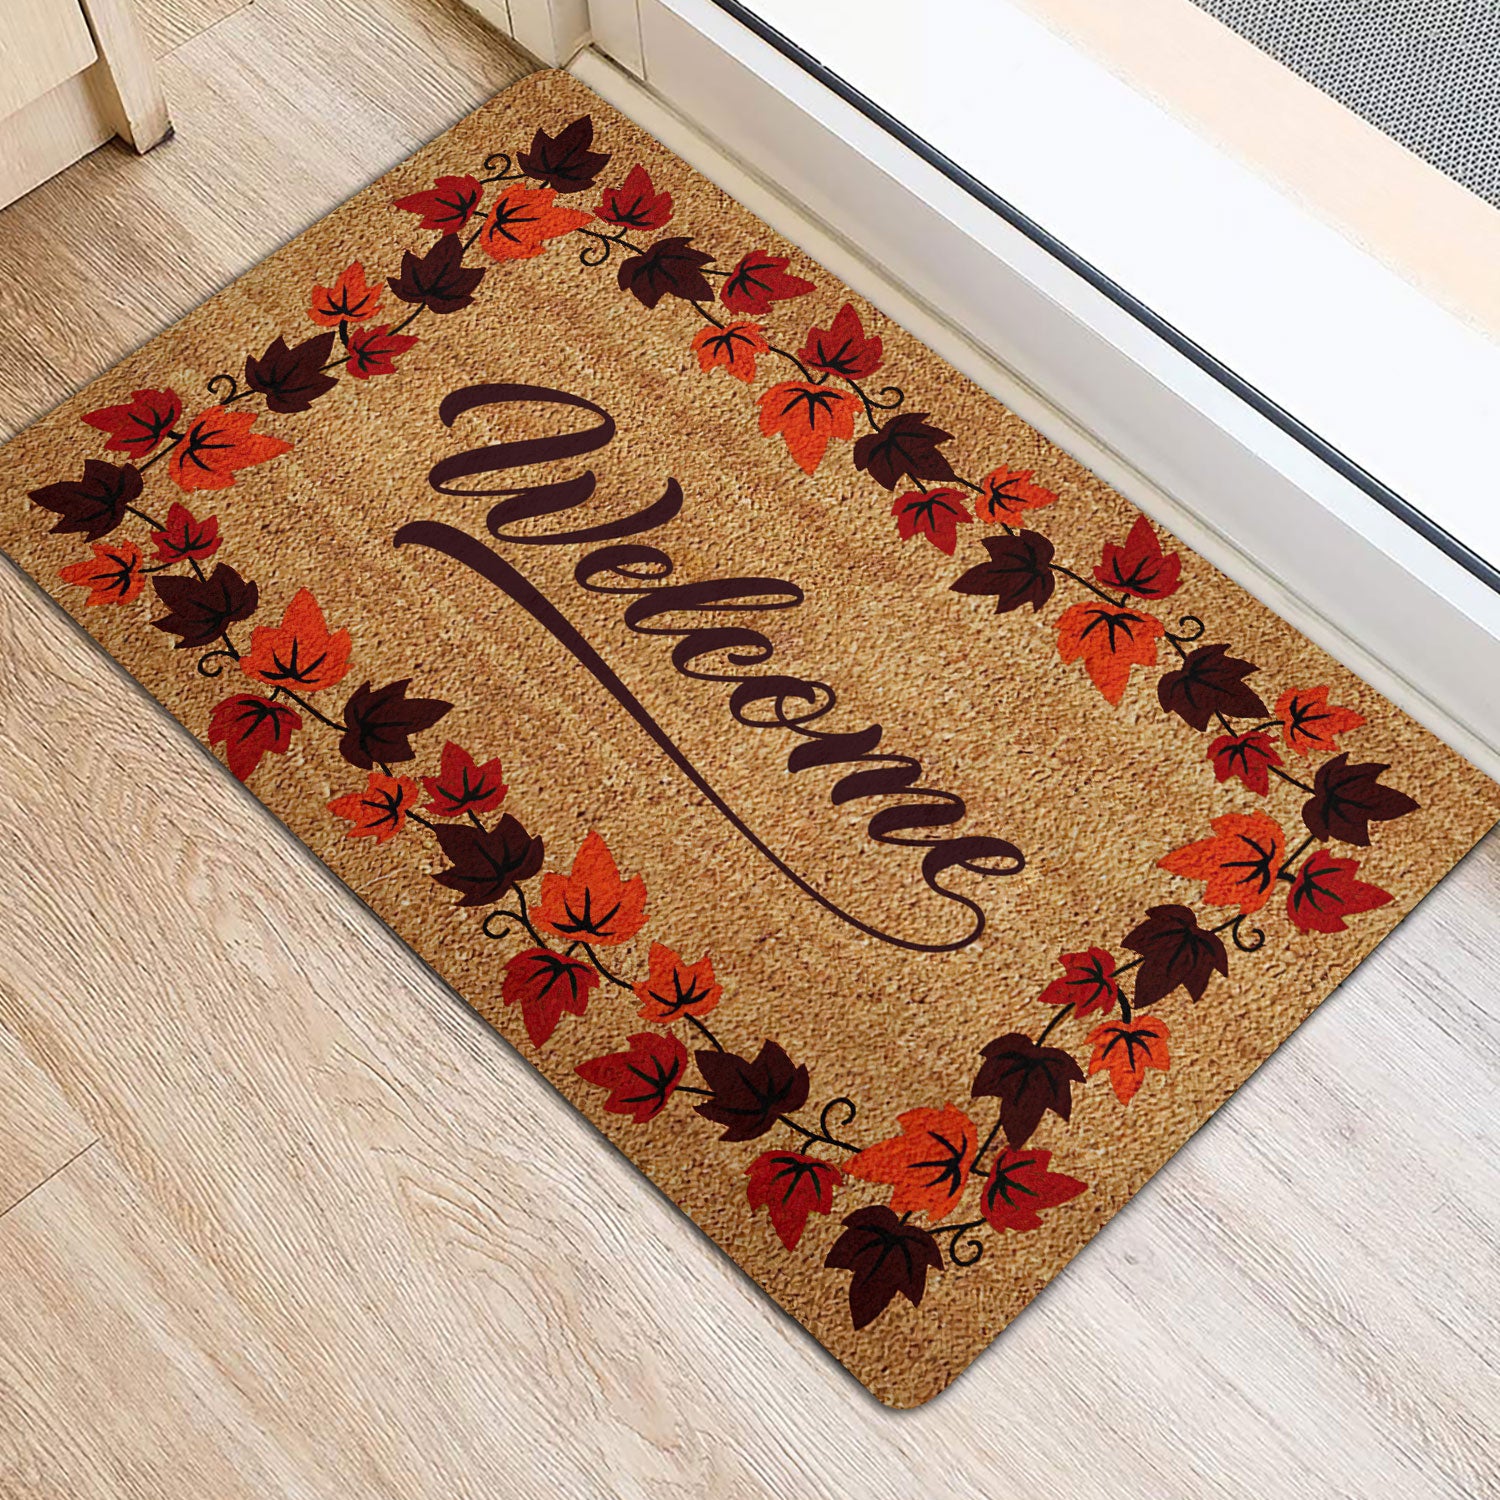 Ohaprints-Doormat-Outdoor-Indoor-Autum-Fall-Welcome-Maple-Leaf-Autumn-Harves-Leaves-Autumn-Rubber-Door-Mat-2015-